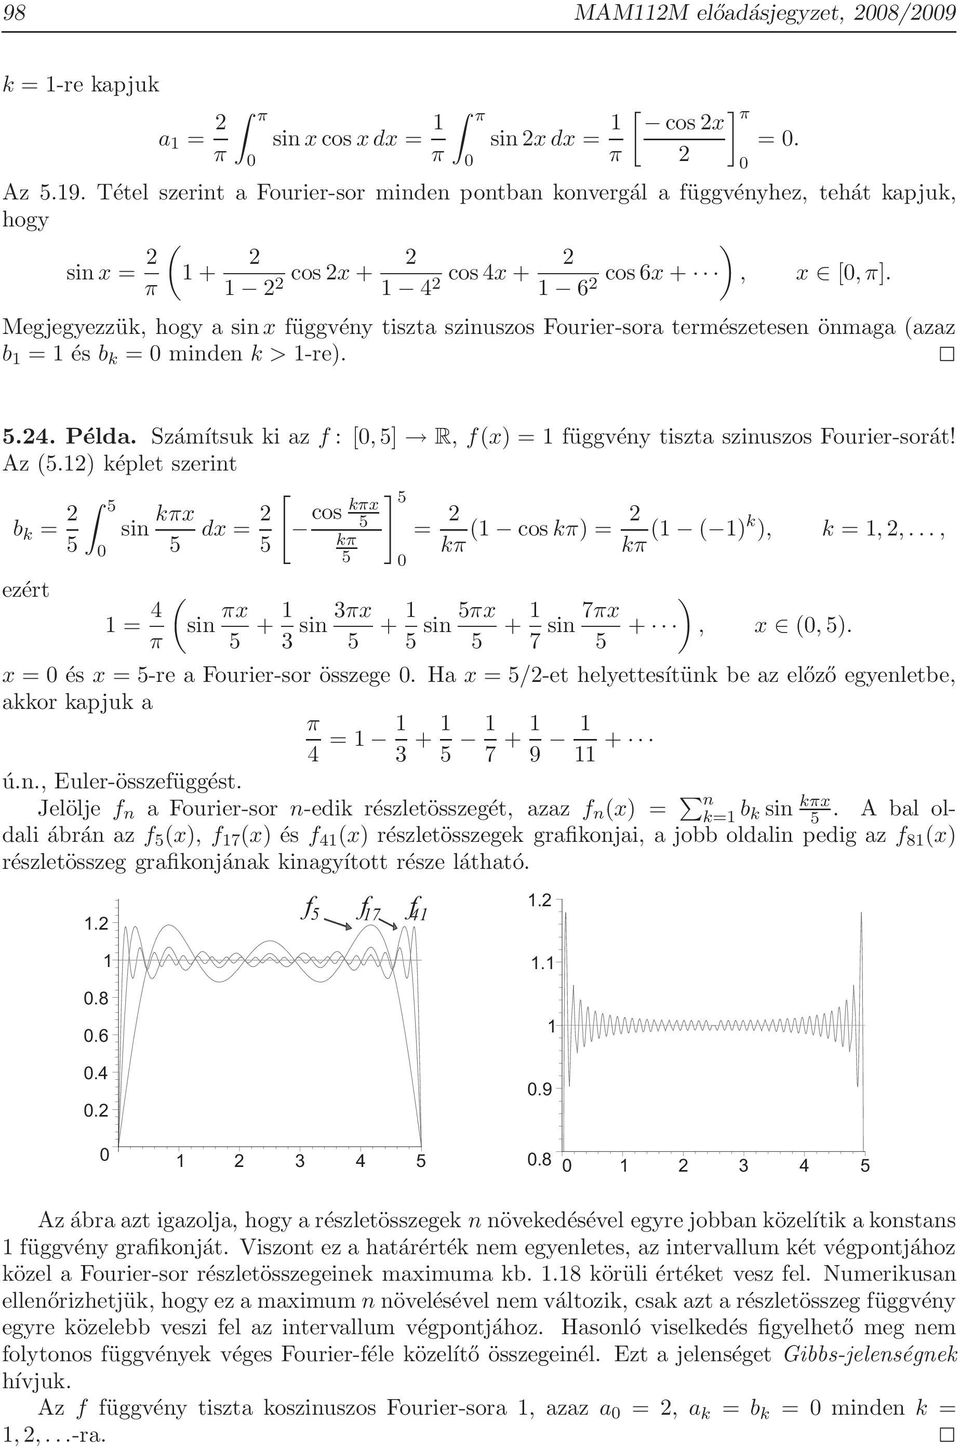 π 1 1 4 1 6 Megjegyezzük, hogy a sin x függvény tiszta szinuszos Fourier-sora természetesen önmaga azaz b 1 1 és b k minden k > 1-re. ] π. 5.4. Példa.